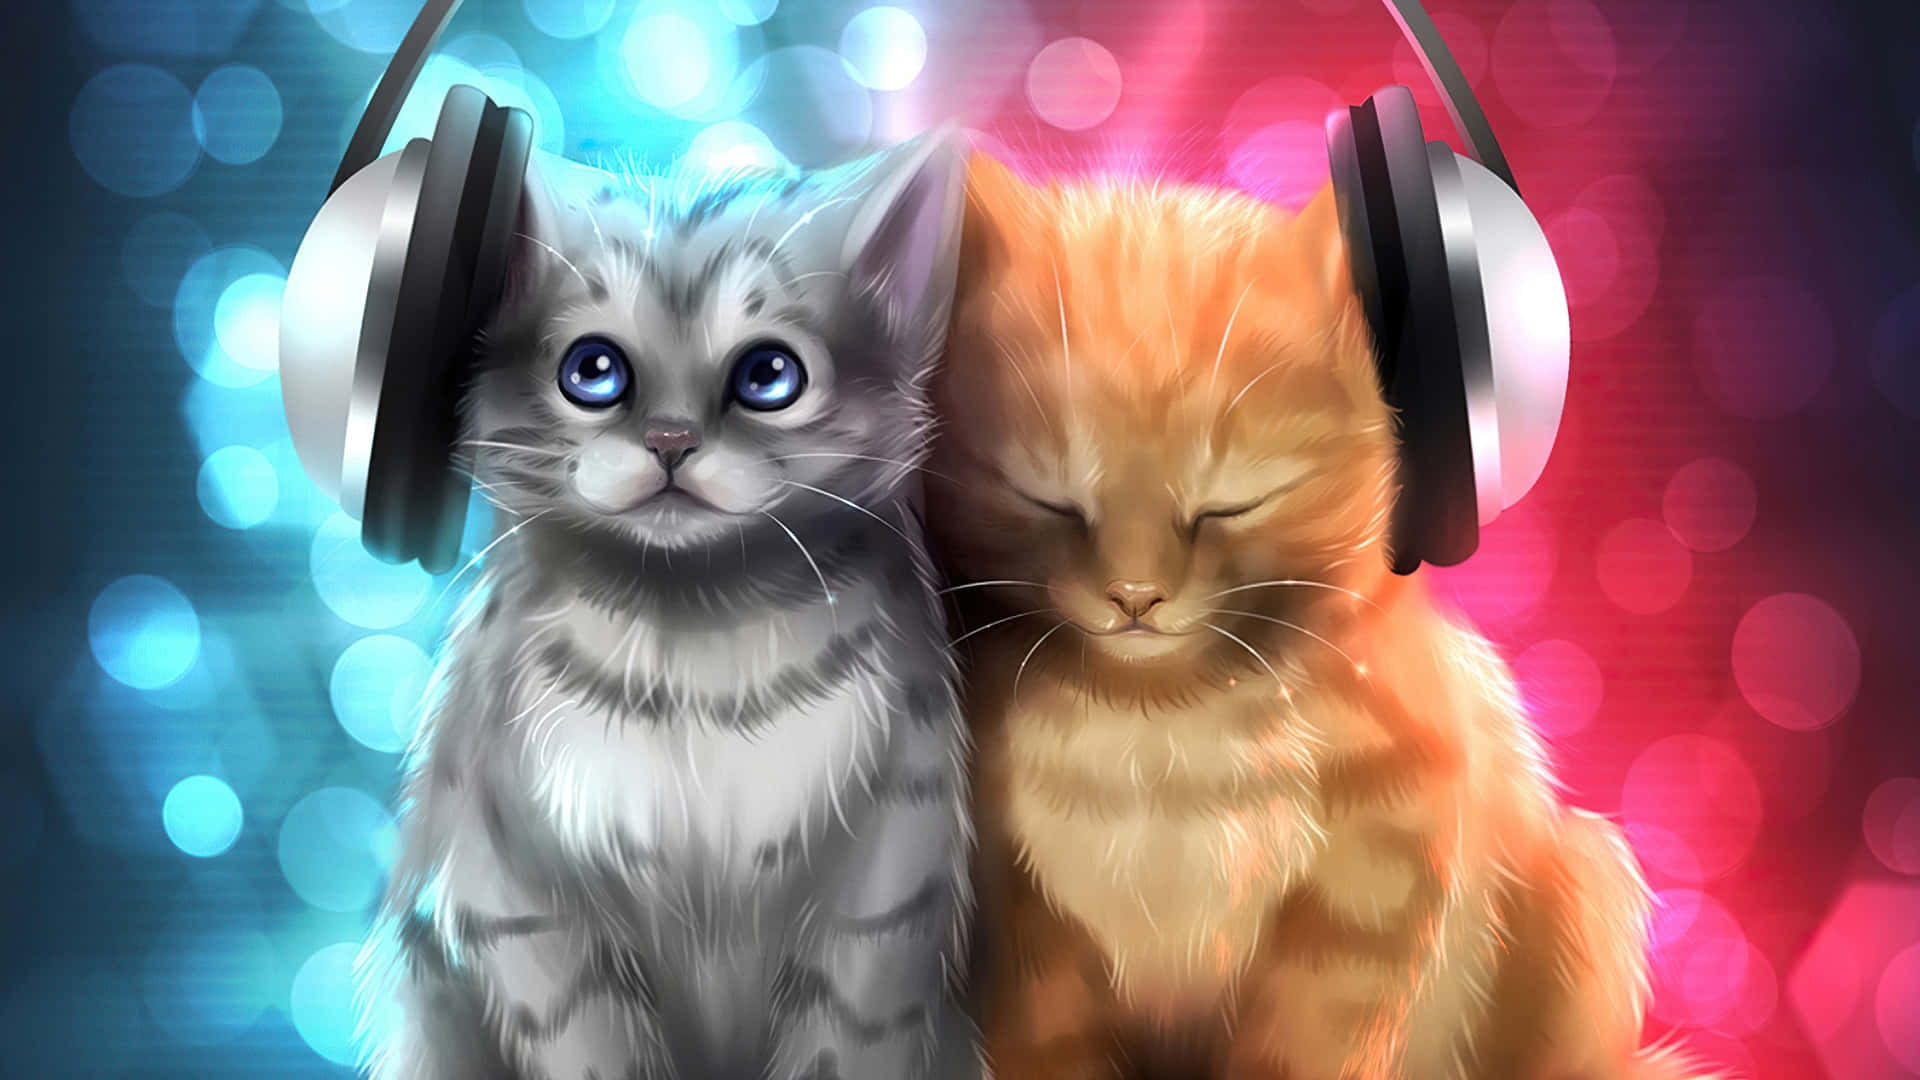 Zweikatzen Mit Kopfhörern Auf Ihren Köpfen Wallpaper